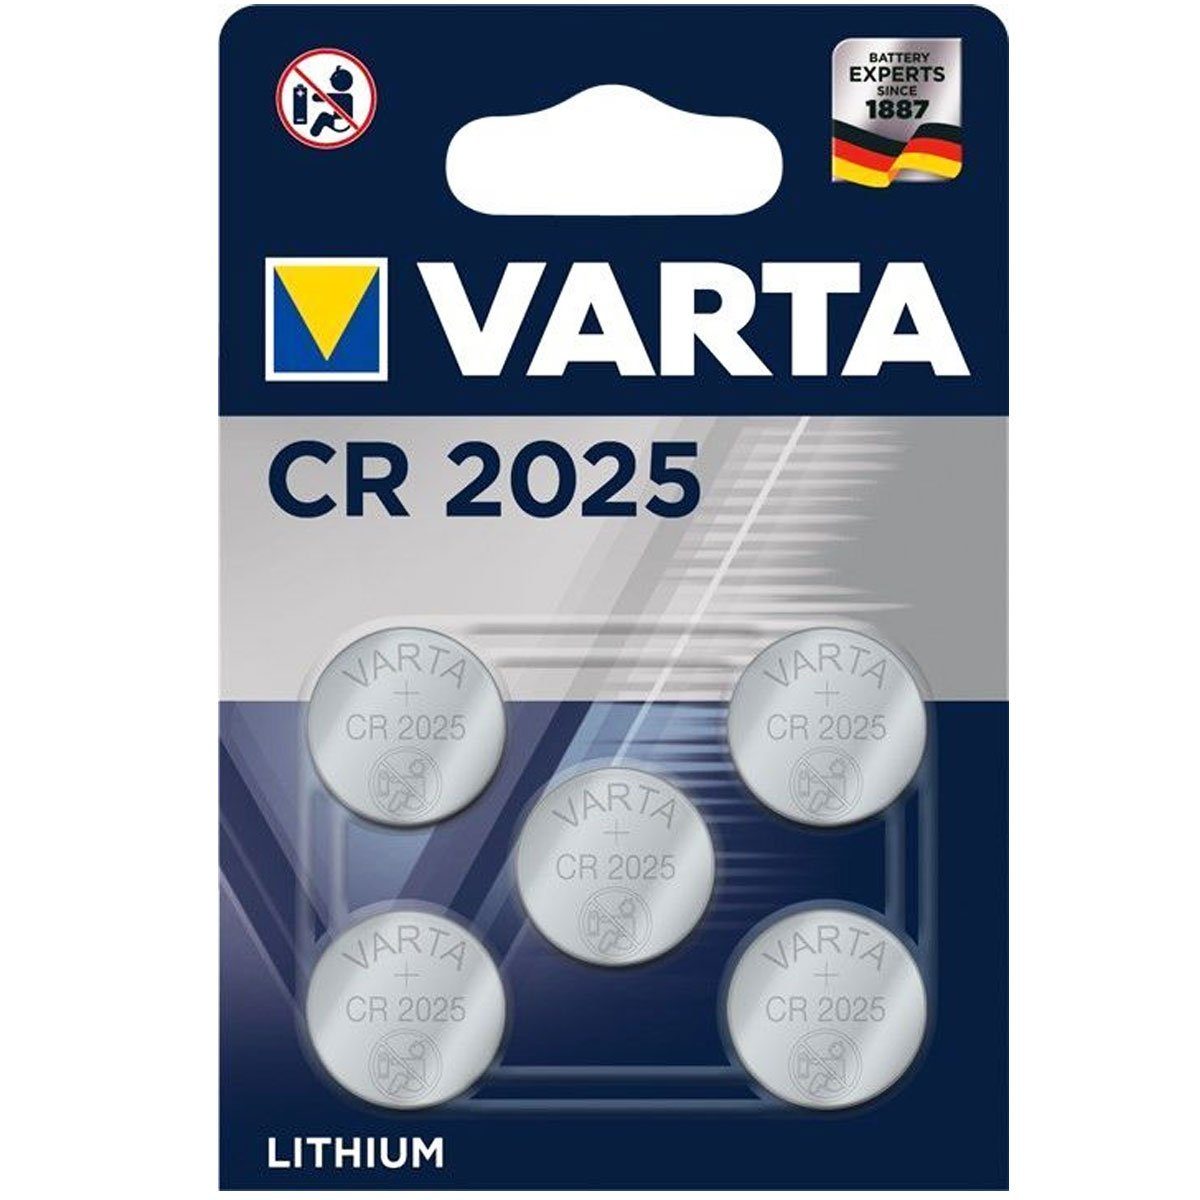 VARTA Varta CR2025 Lithium Batterie im 5er Sparpack Batterie, (3,0 V)